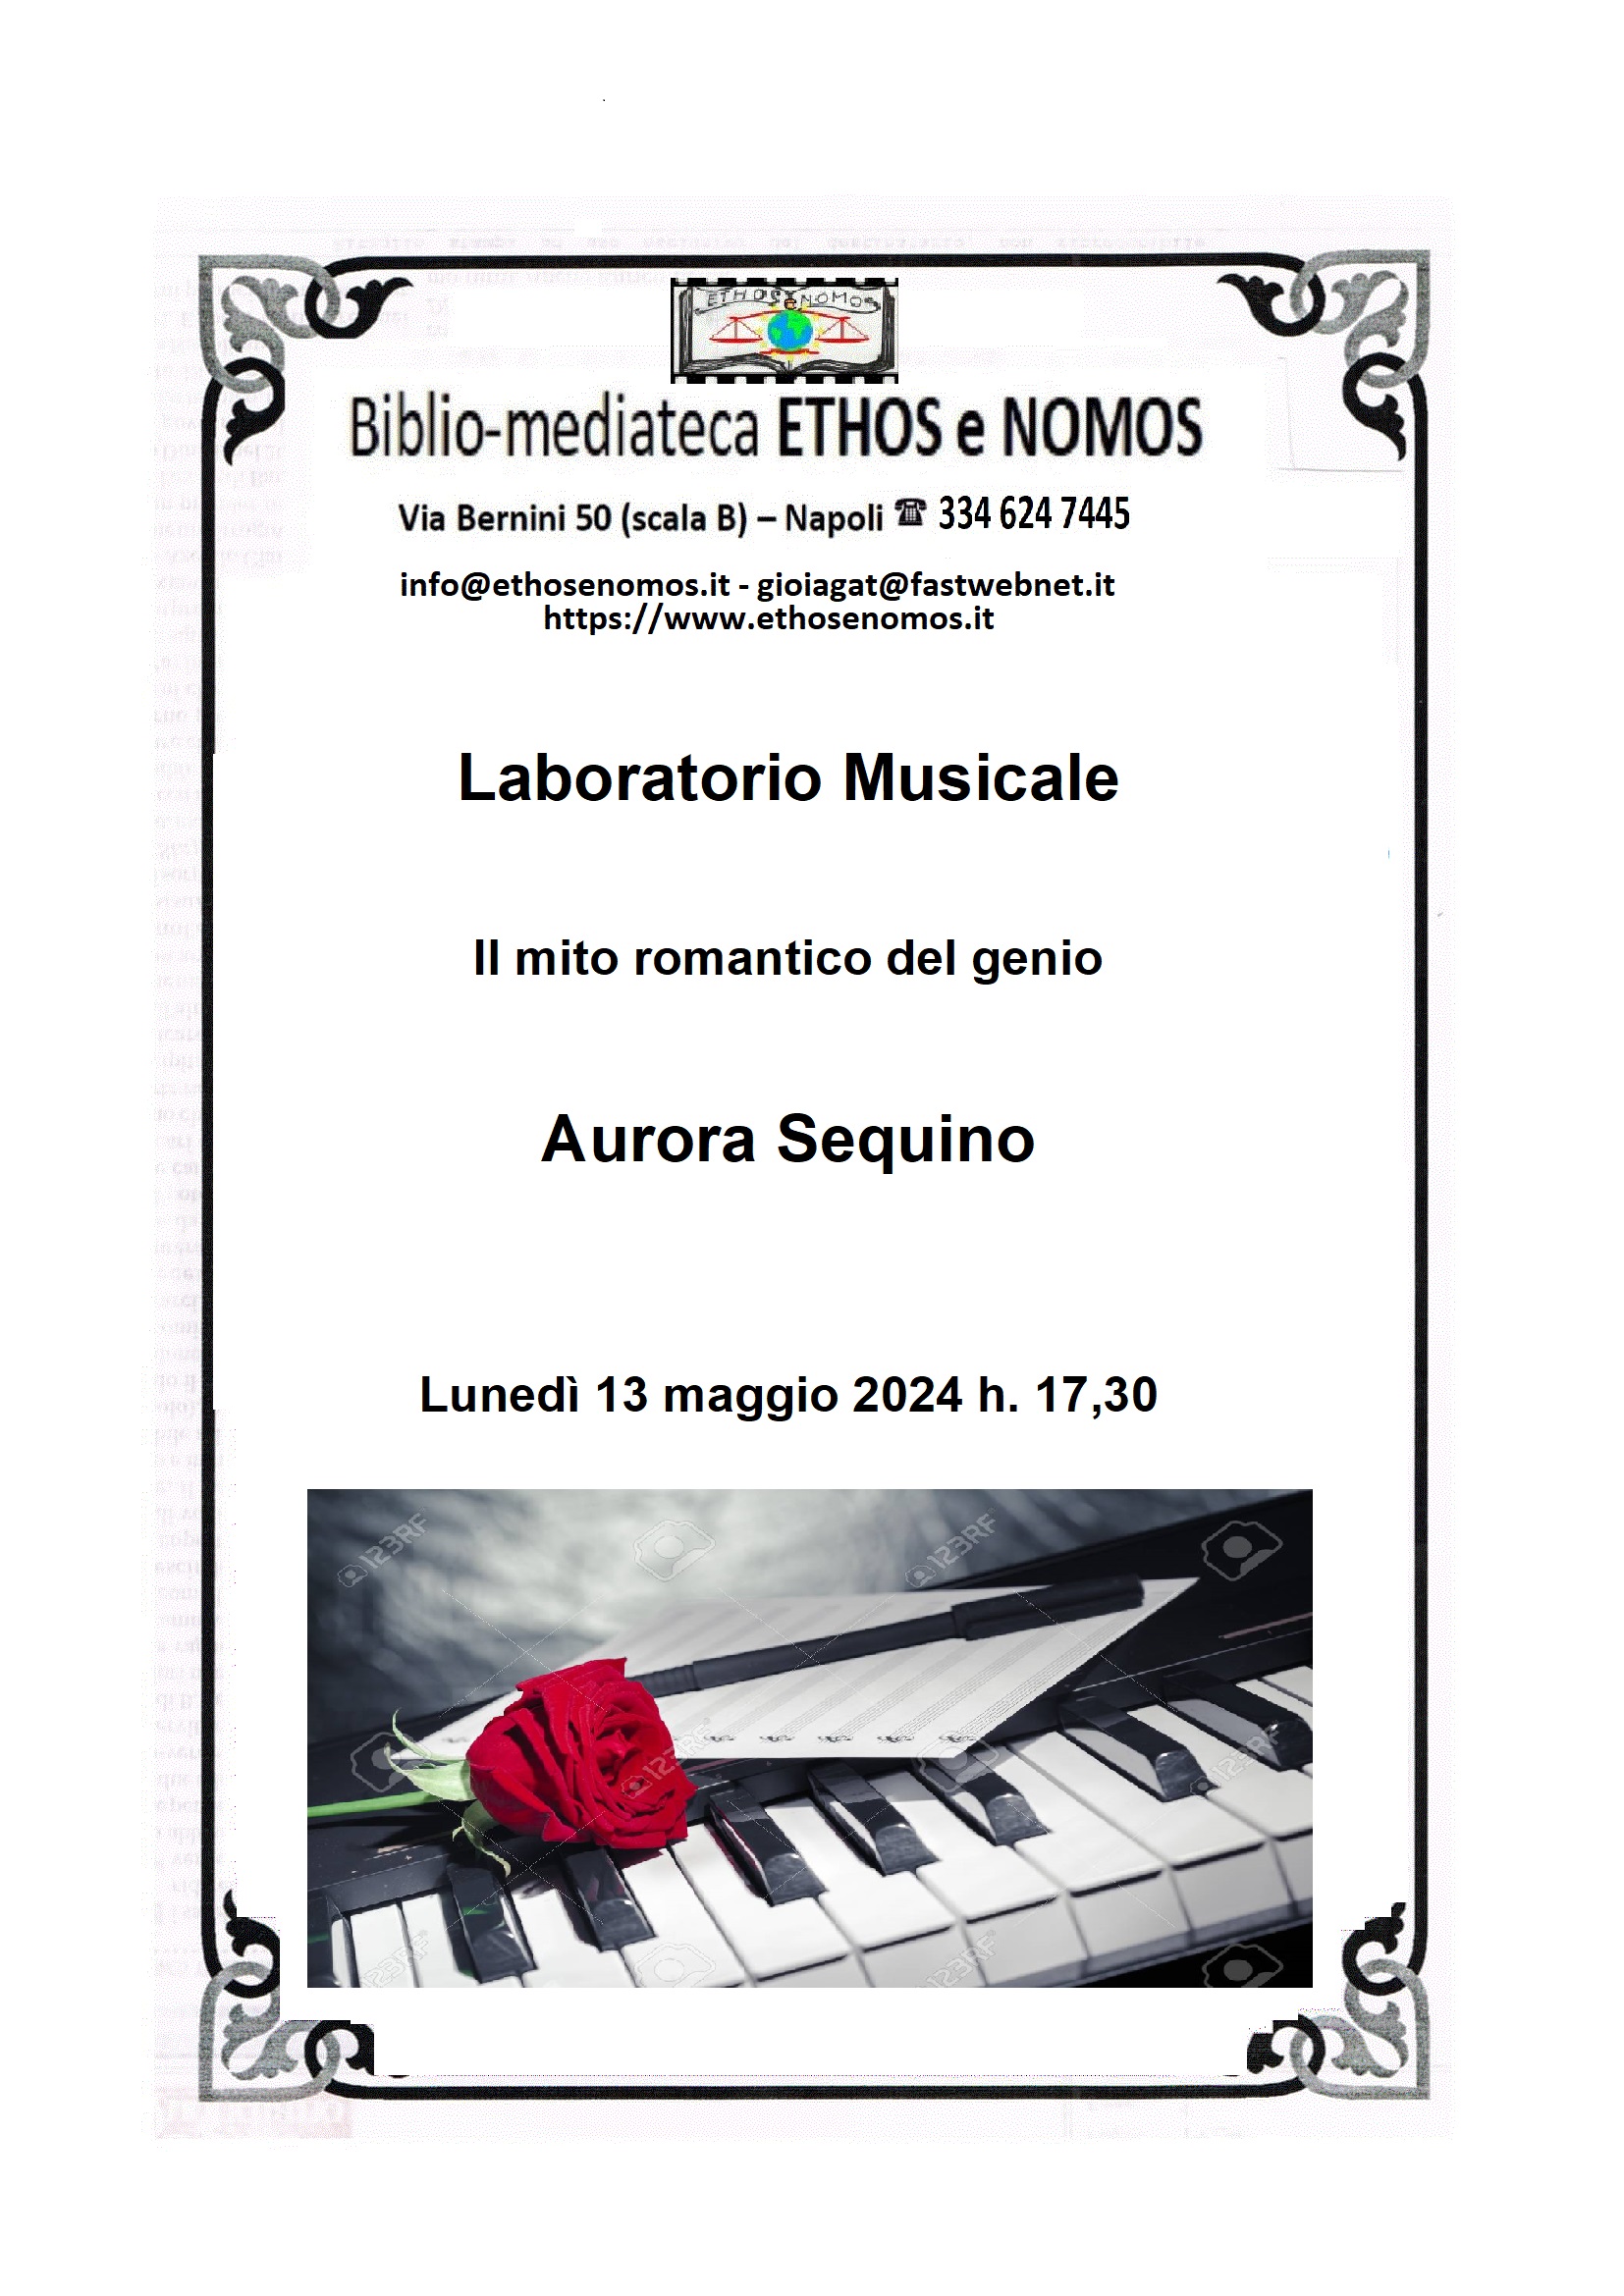 Aurora Sequino - Laboratorio musicale: il mito romantico del genio